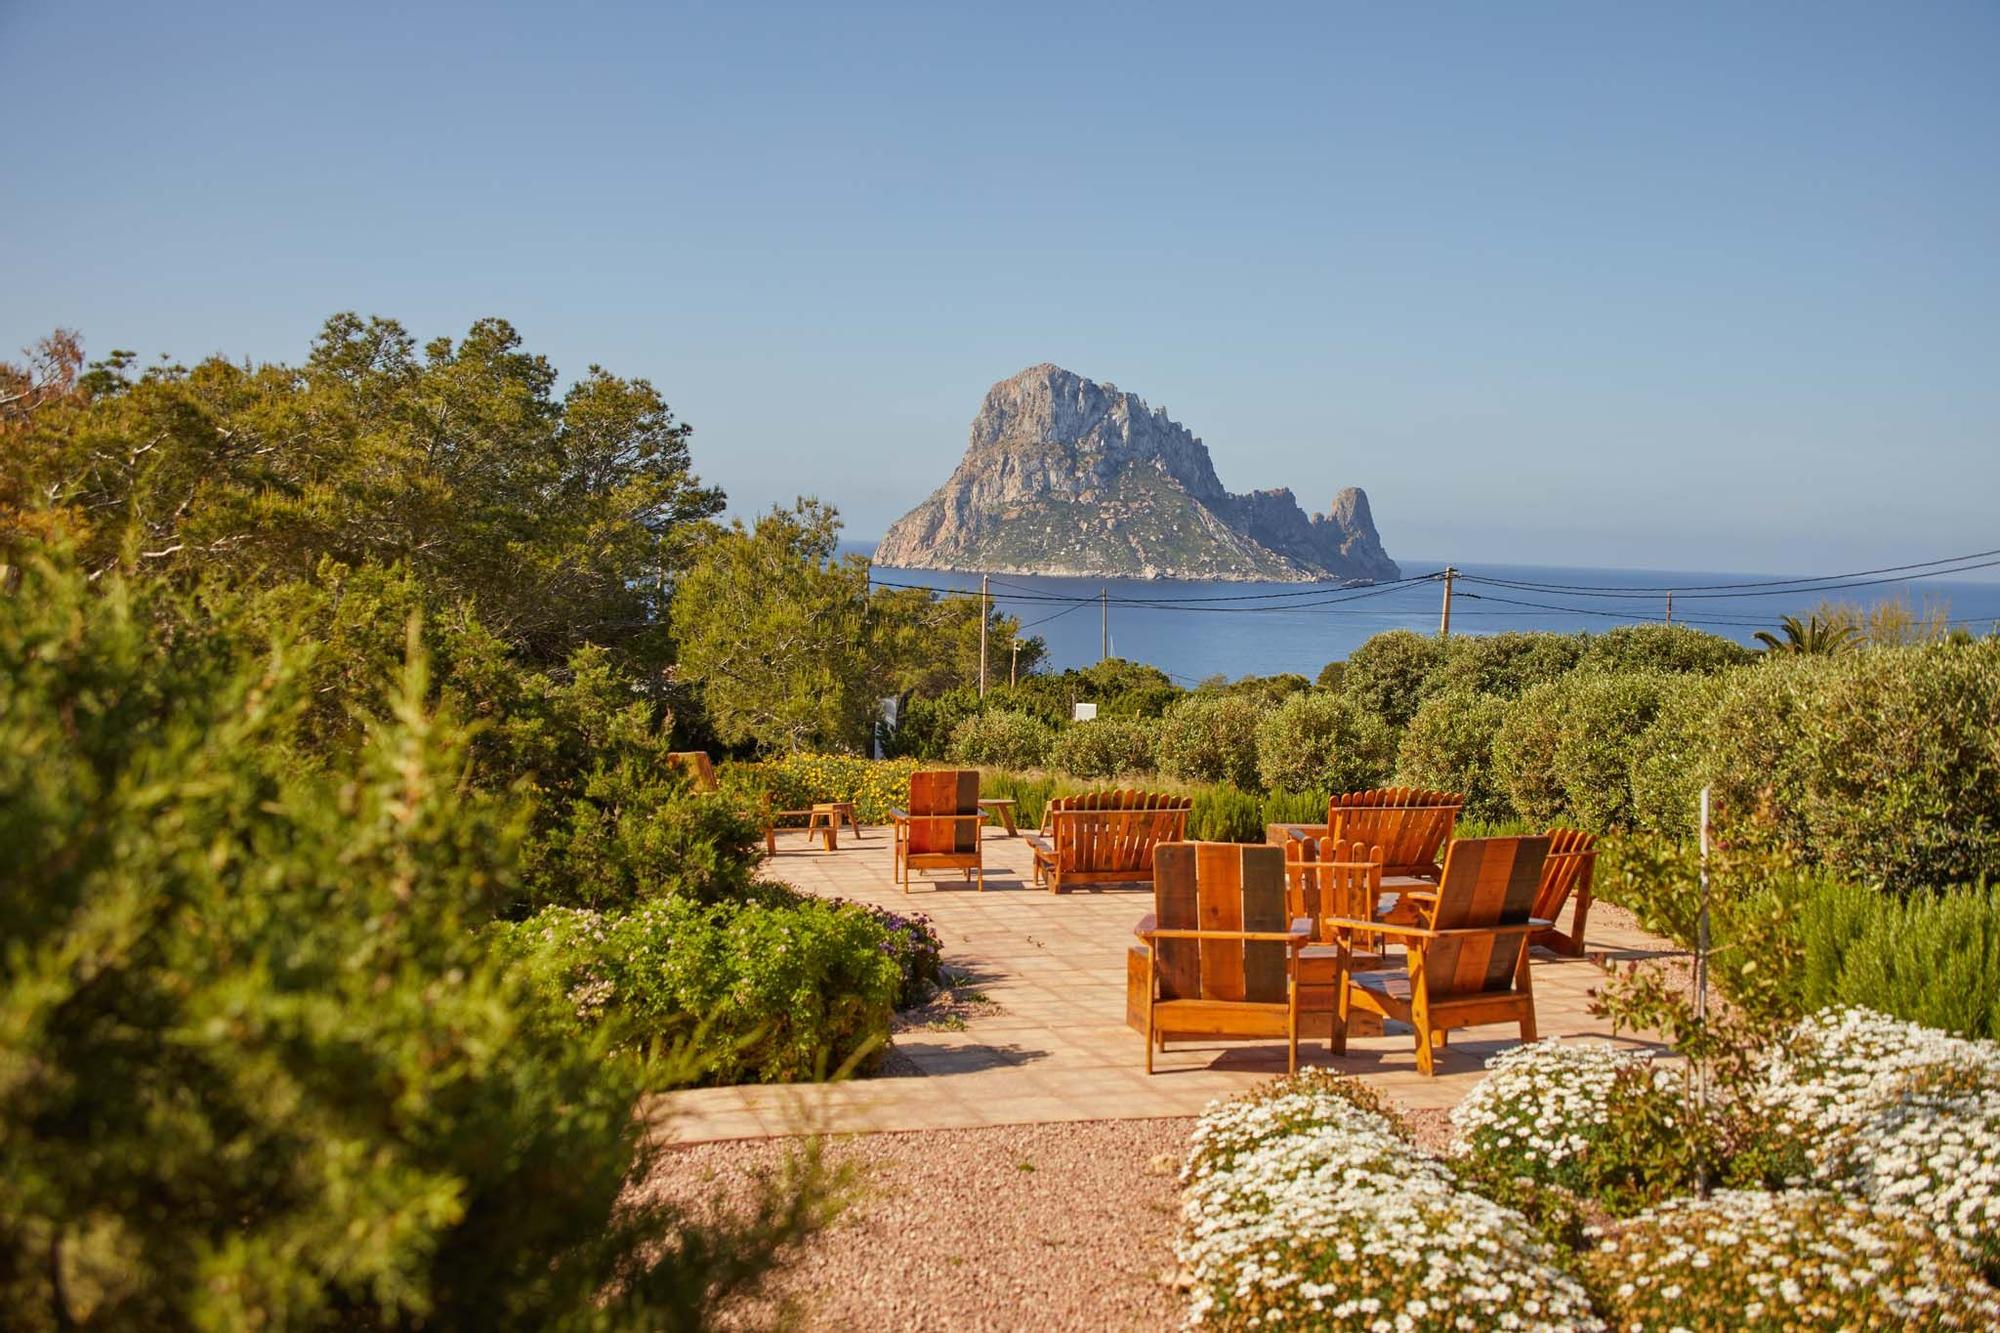 La cadena francesa Beaumier compra un hotel en Ibiza